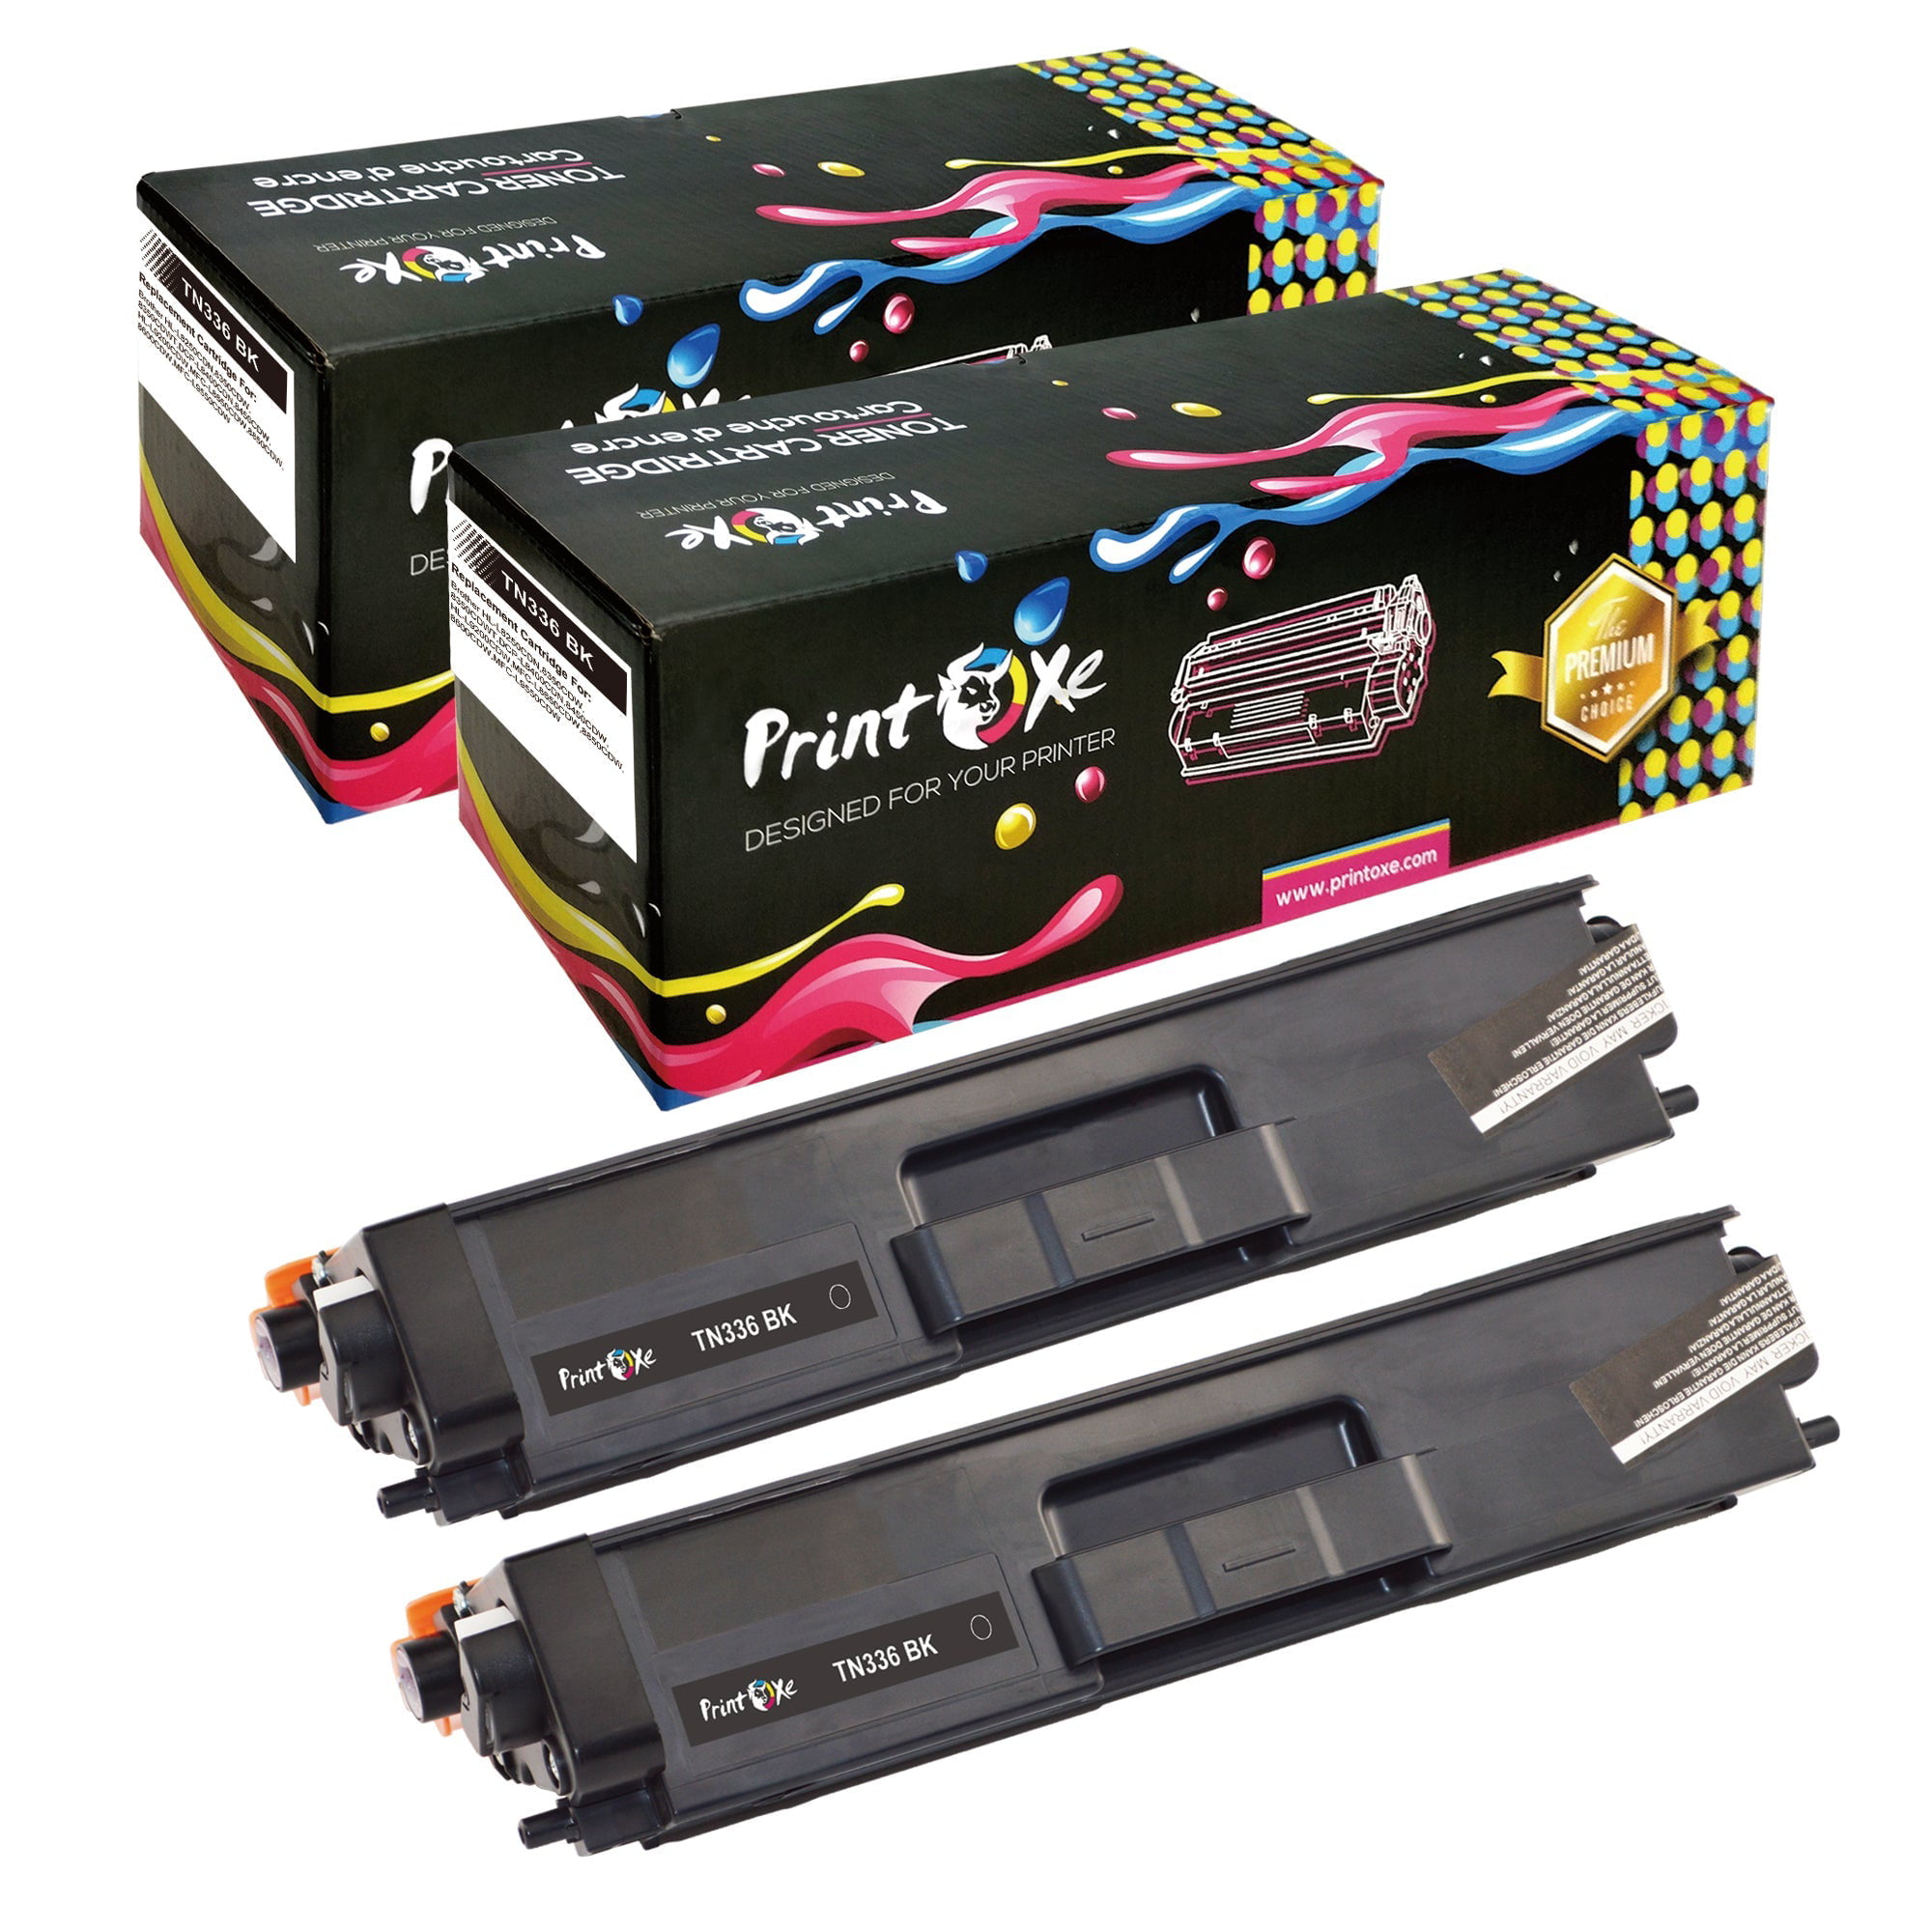 TN336 Compatible Black 2 TN-336 Toner Cartridges TN 336 / 326 for Brother HL L8350CDN L8350CDW L8350CDWT and DCP L8450CDW and MFC L8600CDW L8650CDW L8850CDW -